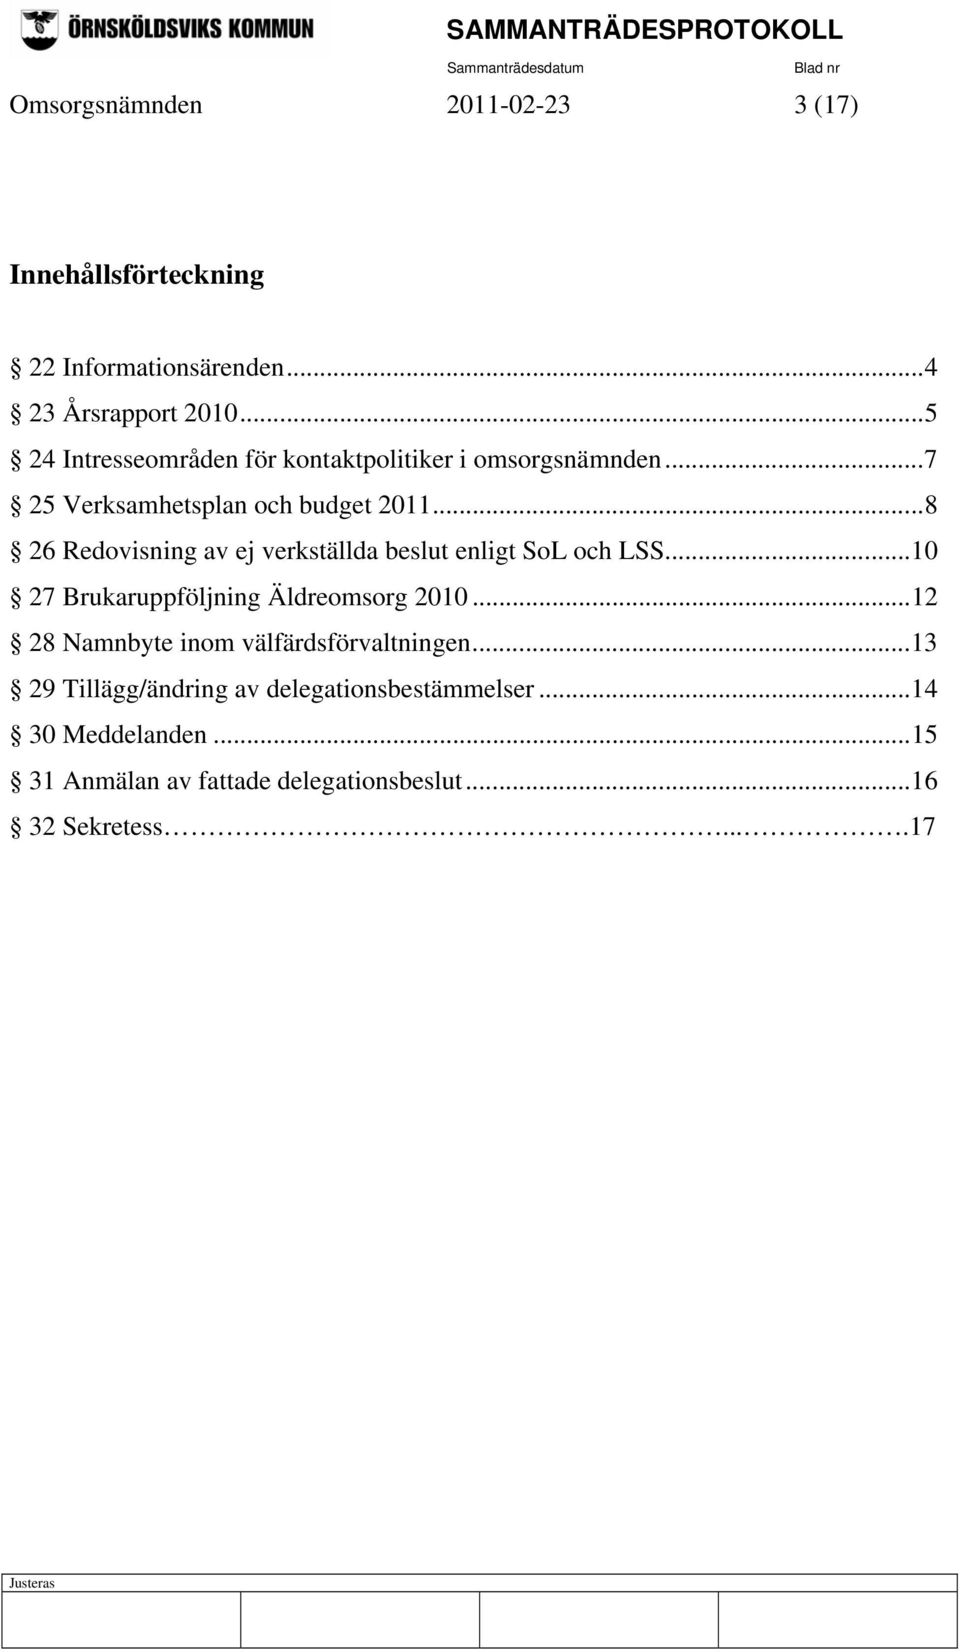 ..8 26 Redovisning av ej verkställda beslut enligt SoL och LSS...10 27 Brukaruppföljning Äldreomsorg 2010.